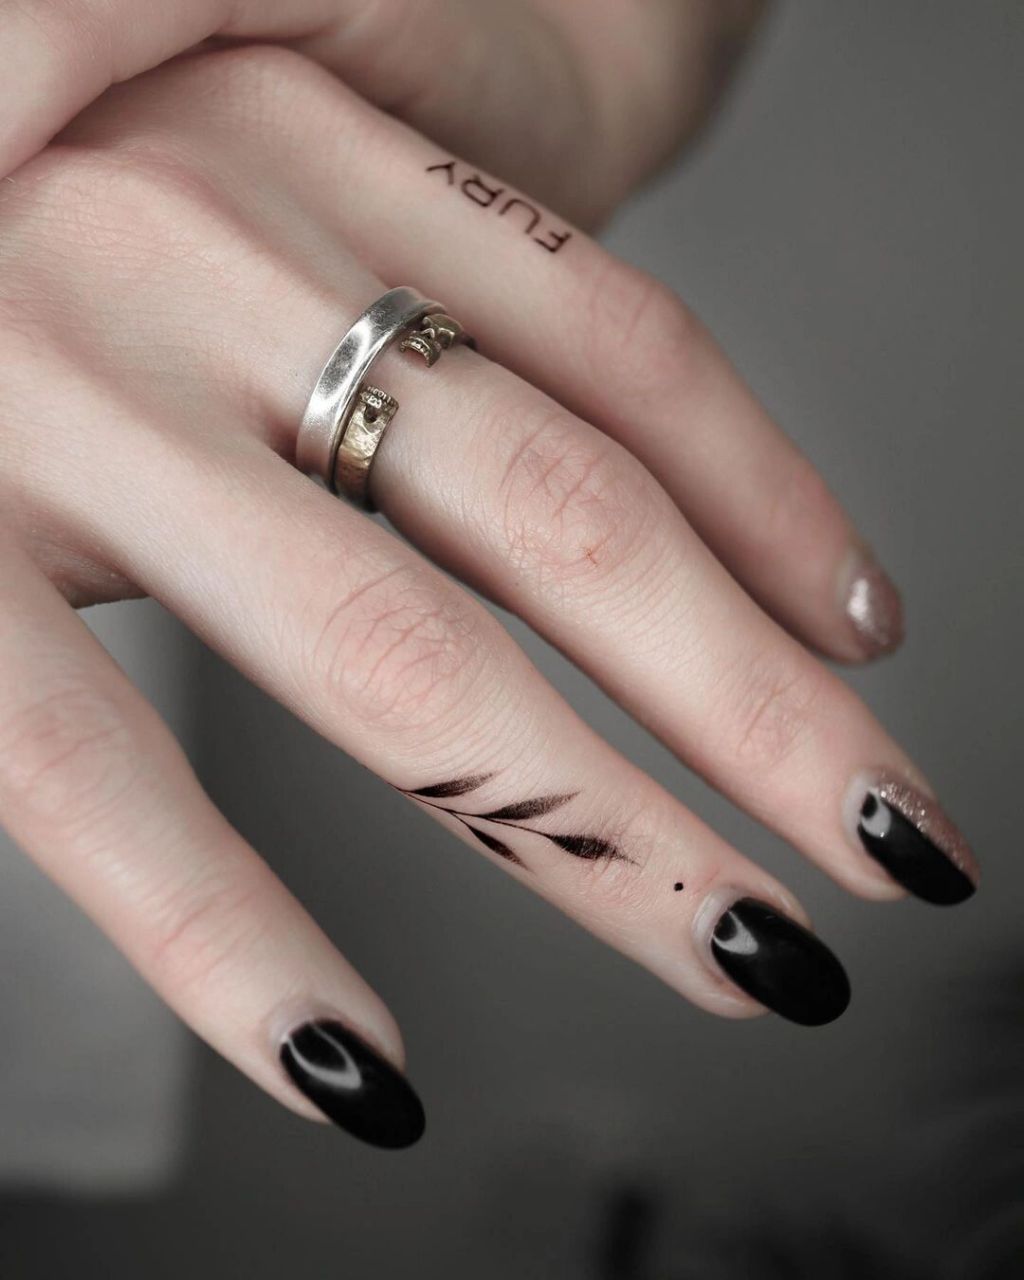 女生手指上超级酷的纹身小图案,手指字母纹身图案,手指上的叶子纹身